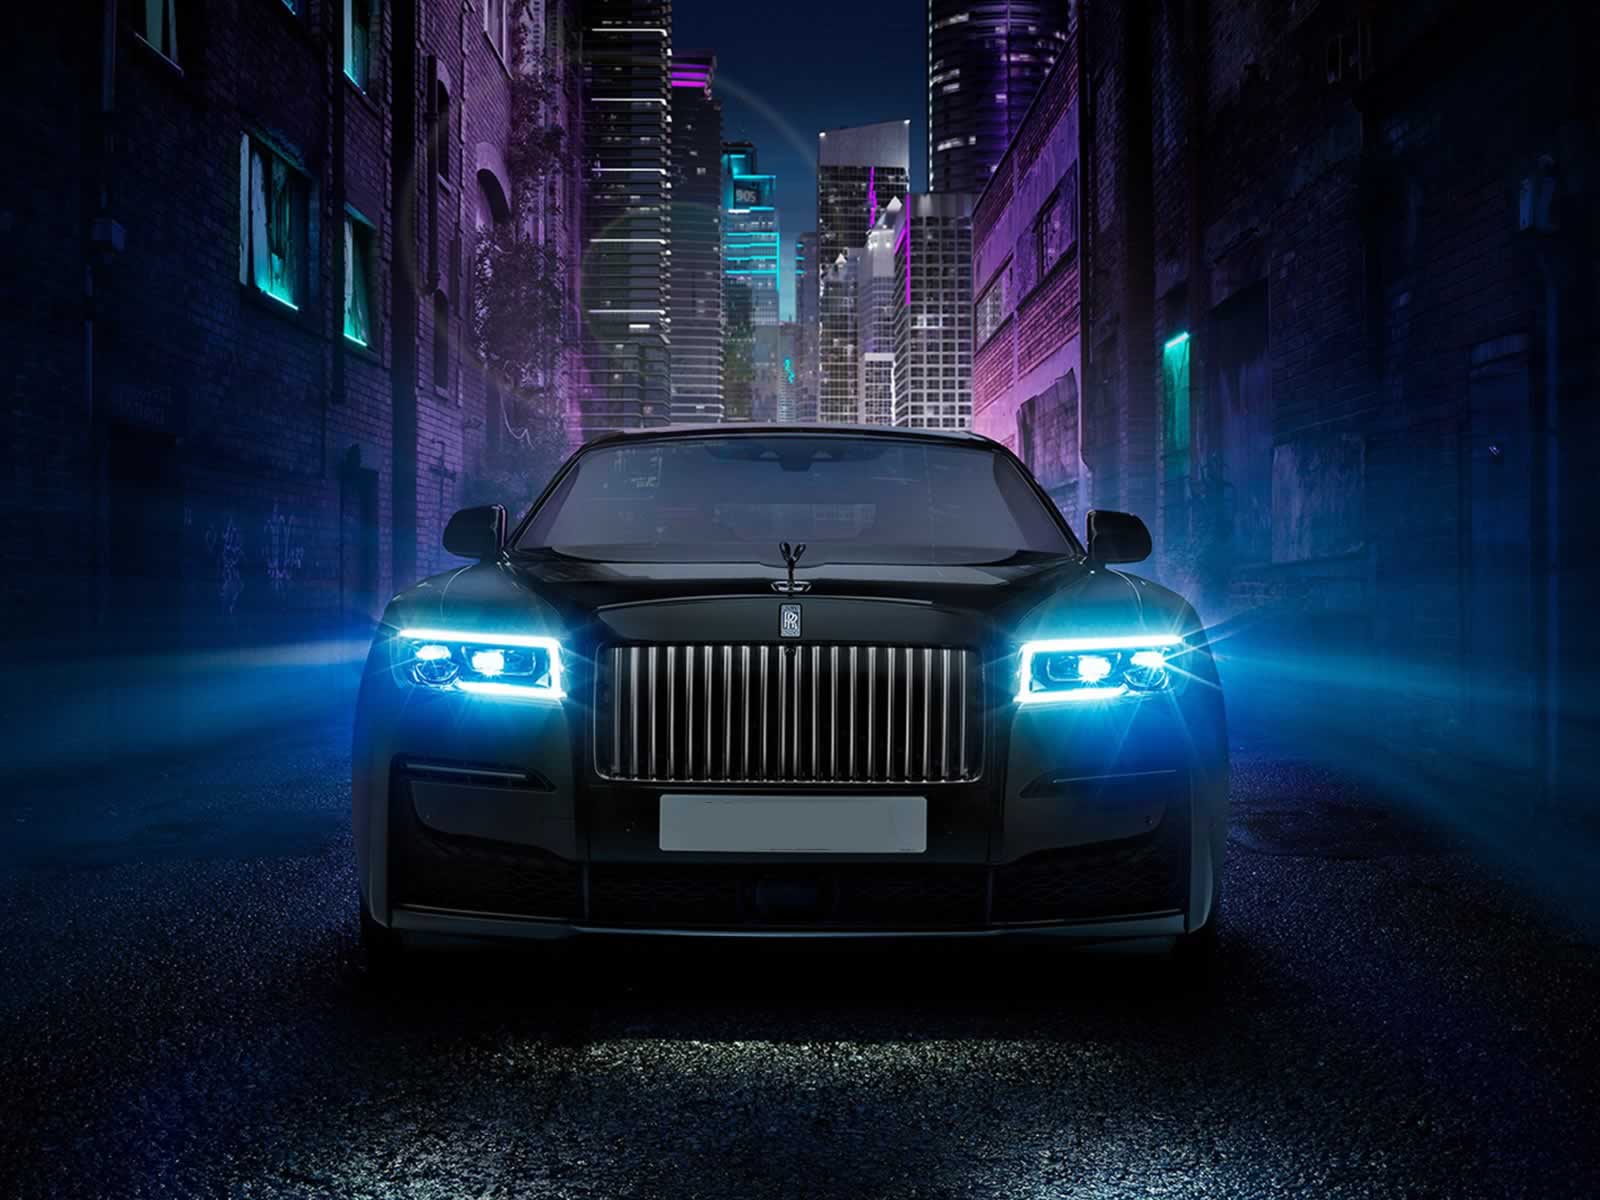 Rolls-Royce luxury cars fleet